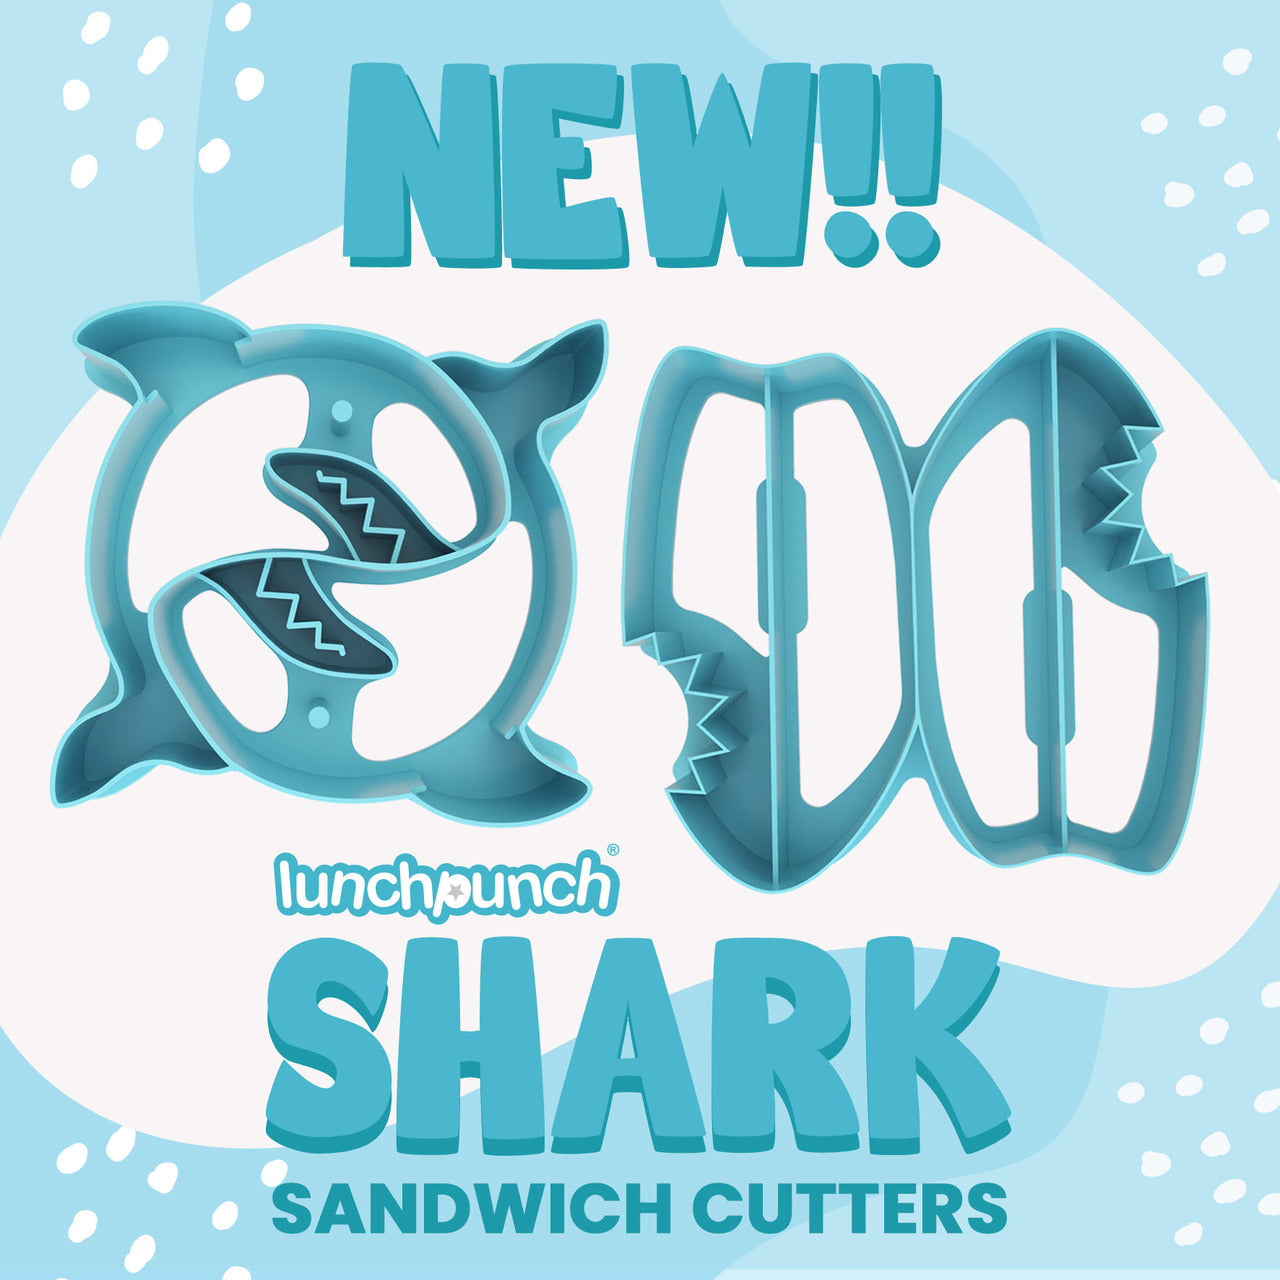 Lunch Punch Sandwich Cutter Pair - SHARKS